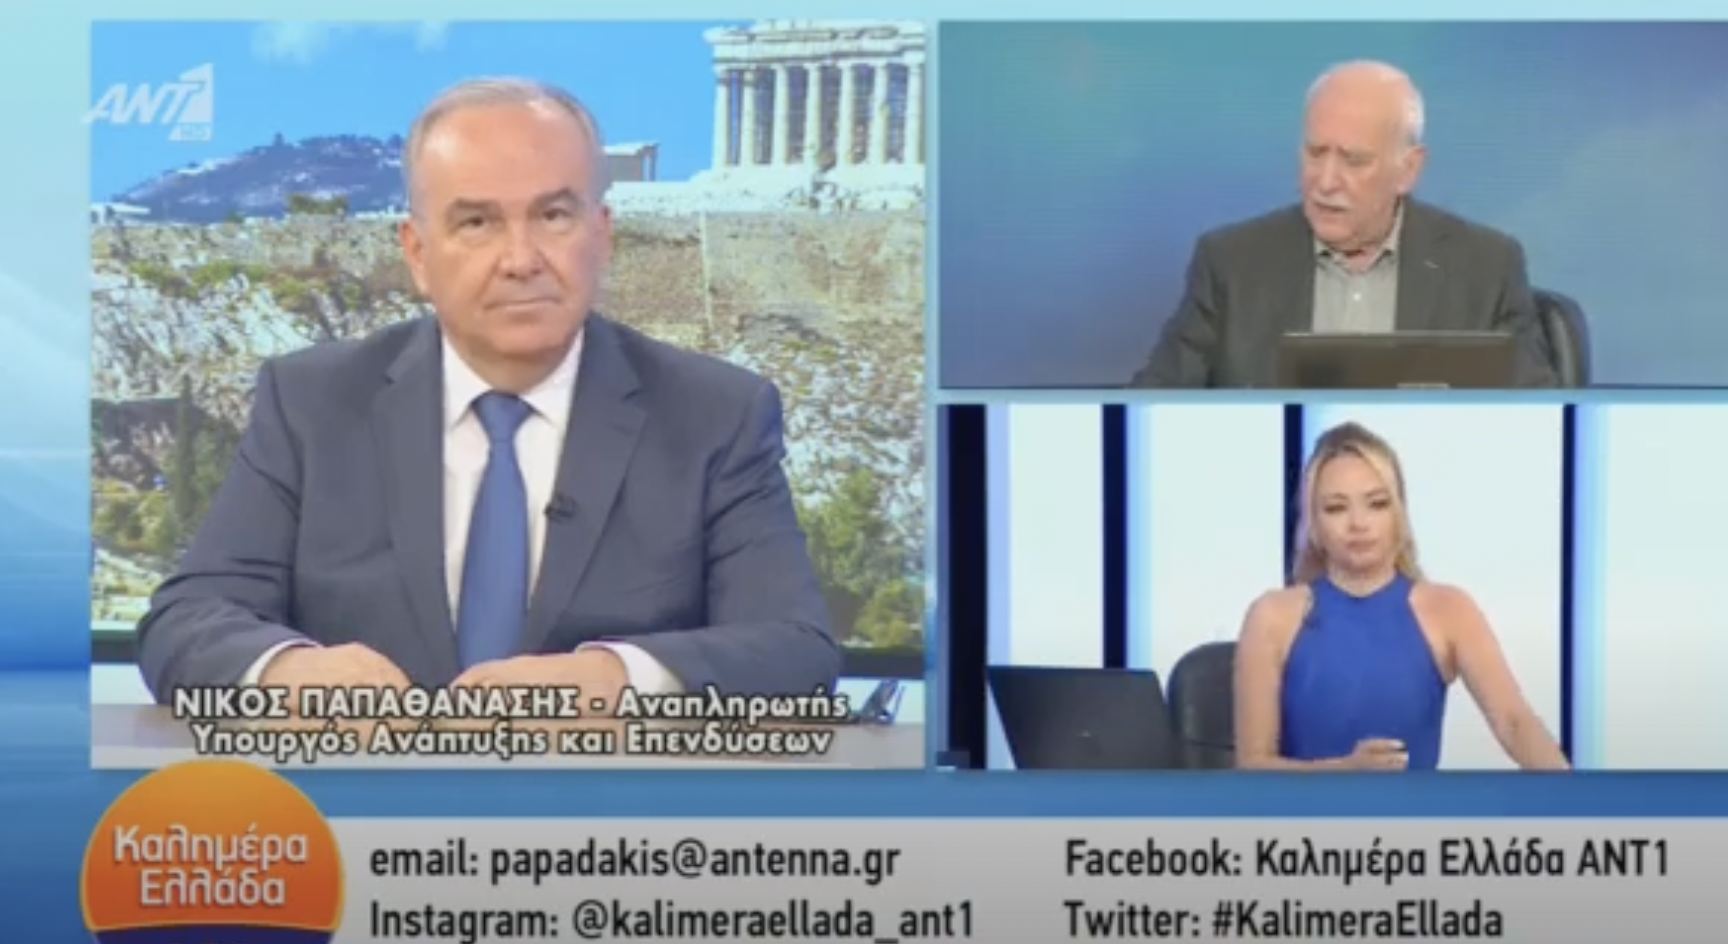 Παρακολουθήστε την συνέντευξη μου, στην εκπομπή “Καλημέρα Ελλάδα” στον ΑΝΤ1 με τον Γιώργο Παπαδάκη